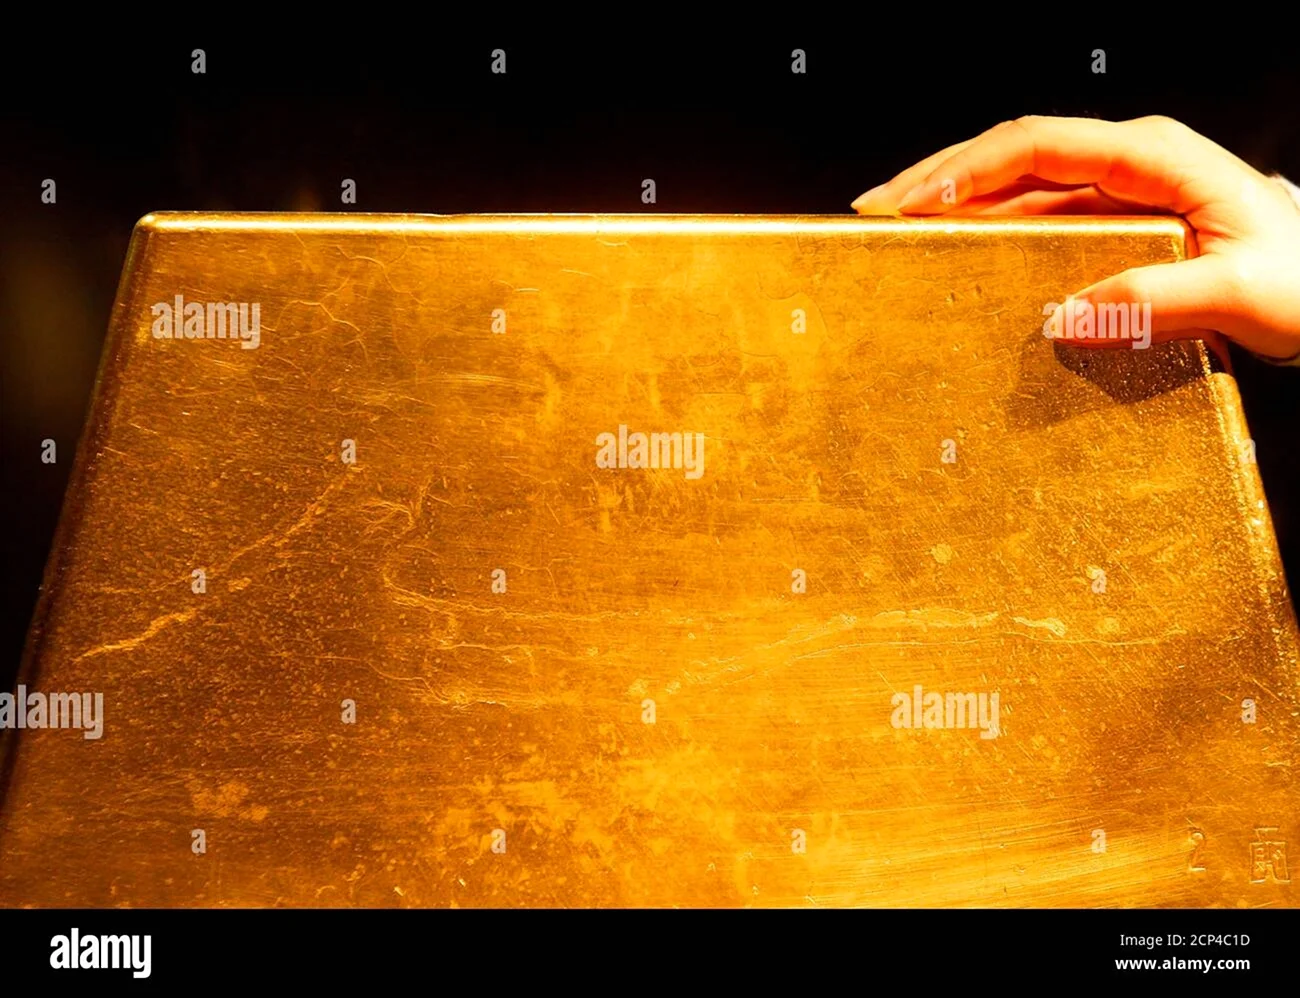 Самый тяжёлый слиток золота в мире весит 250 килограмм